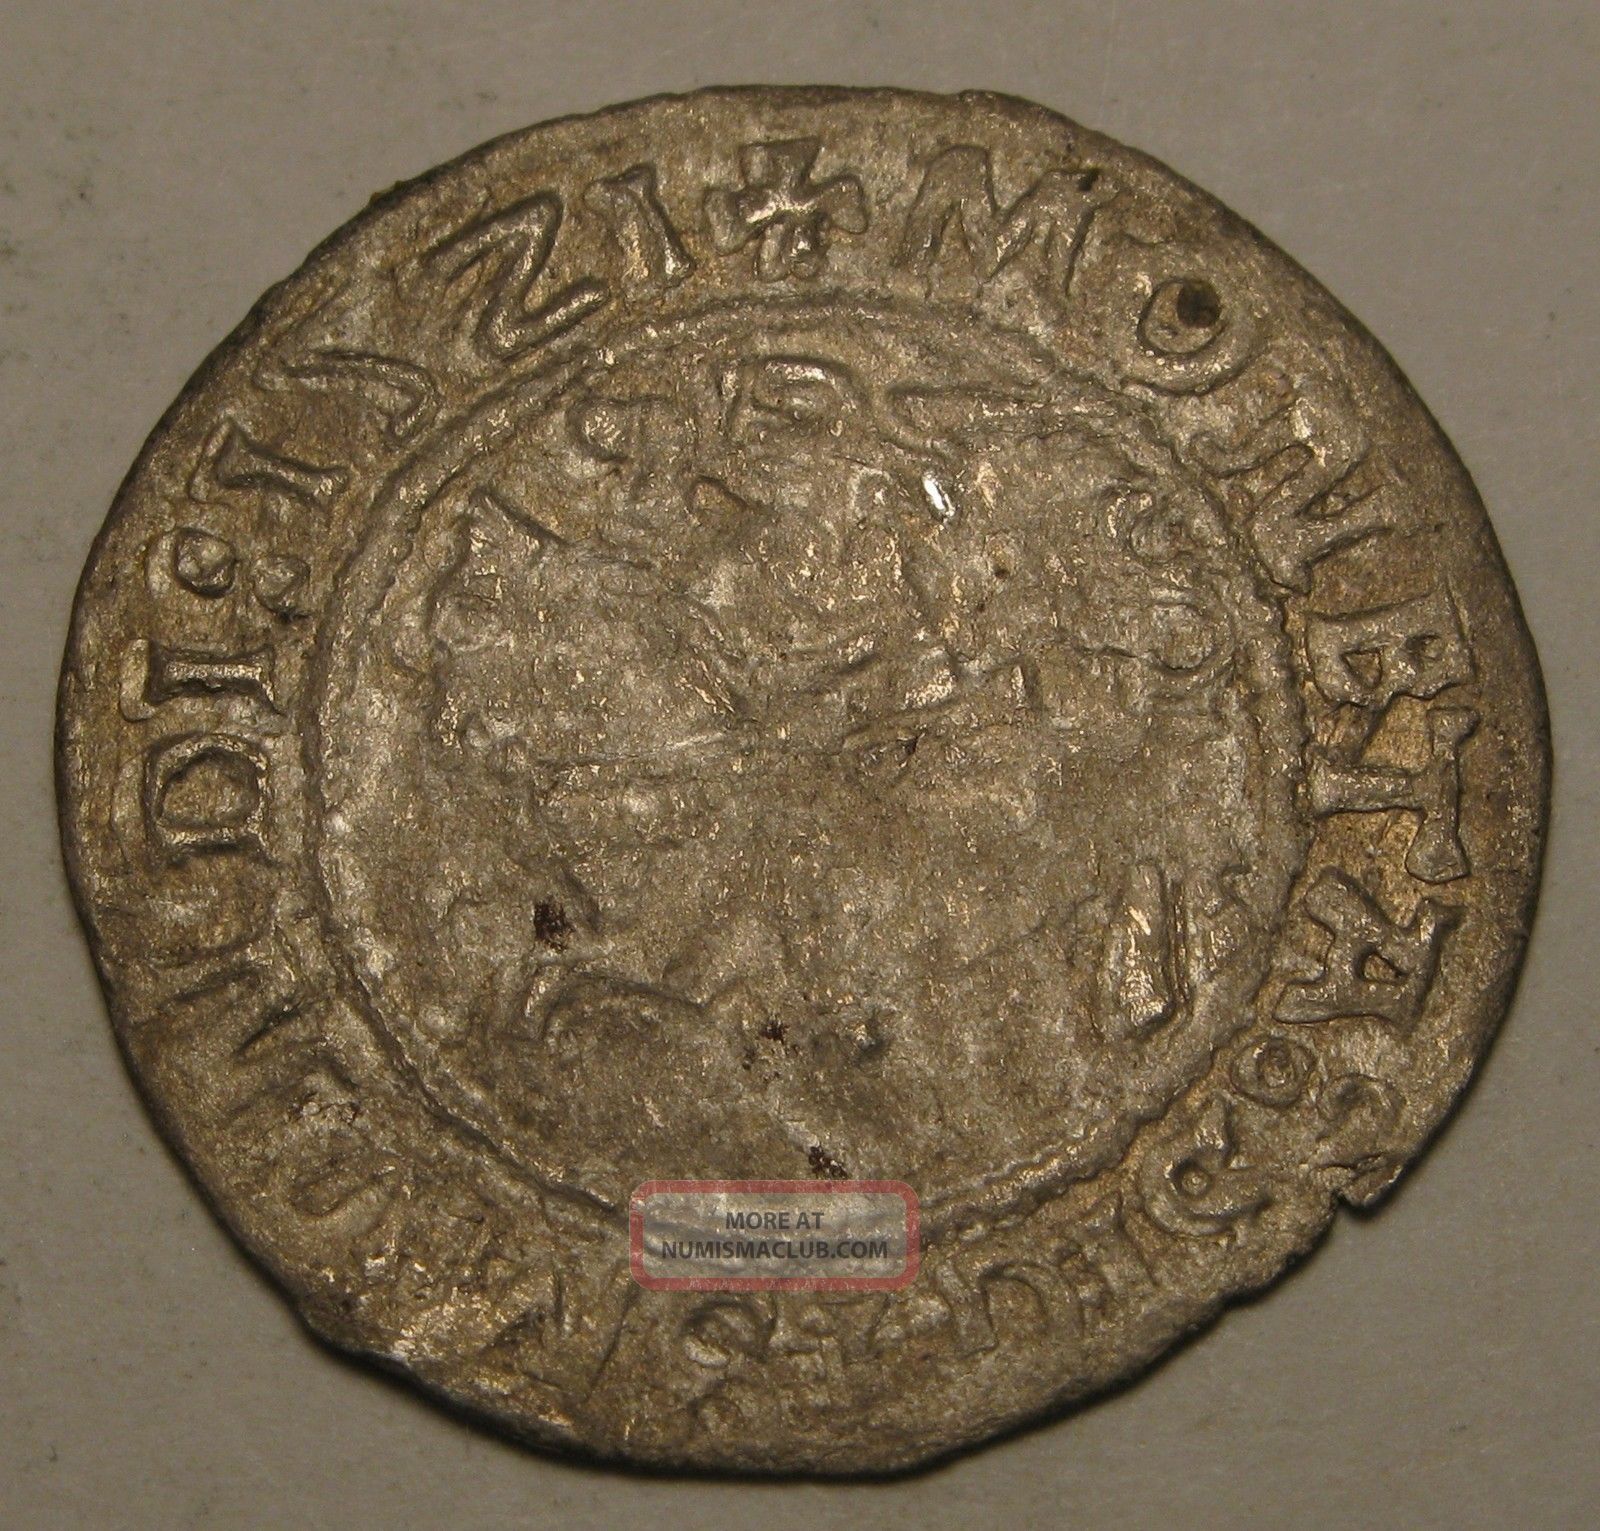 Lithuania 1/2 Groschen 1521 - Silver - Sigismund I. 2702